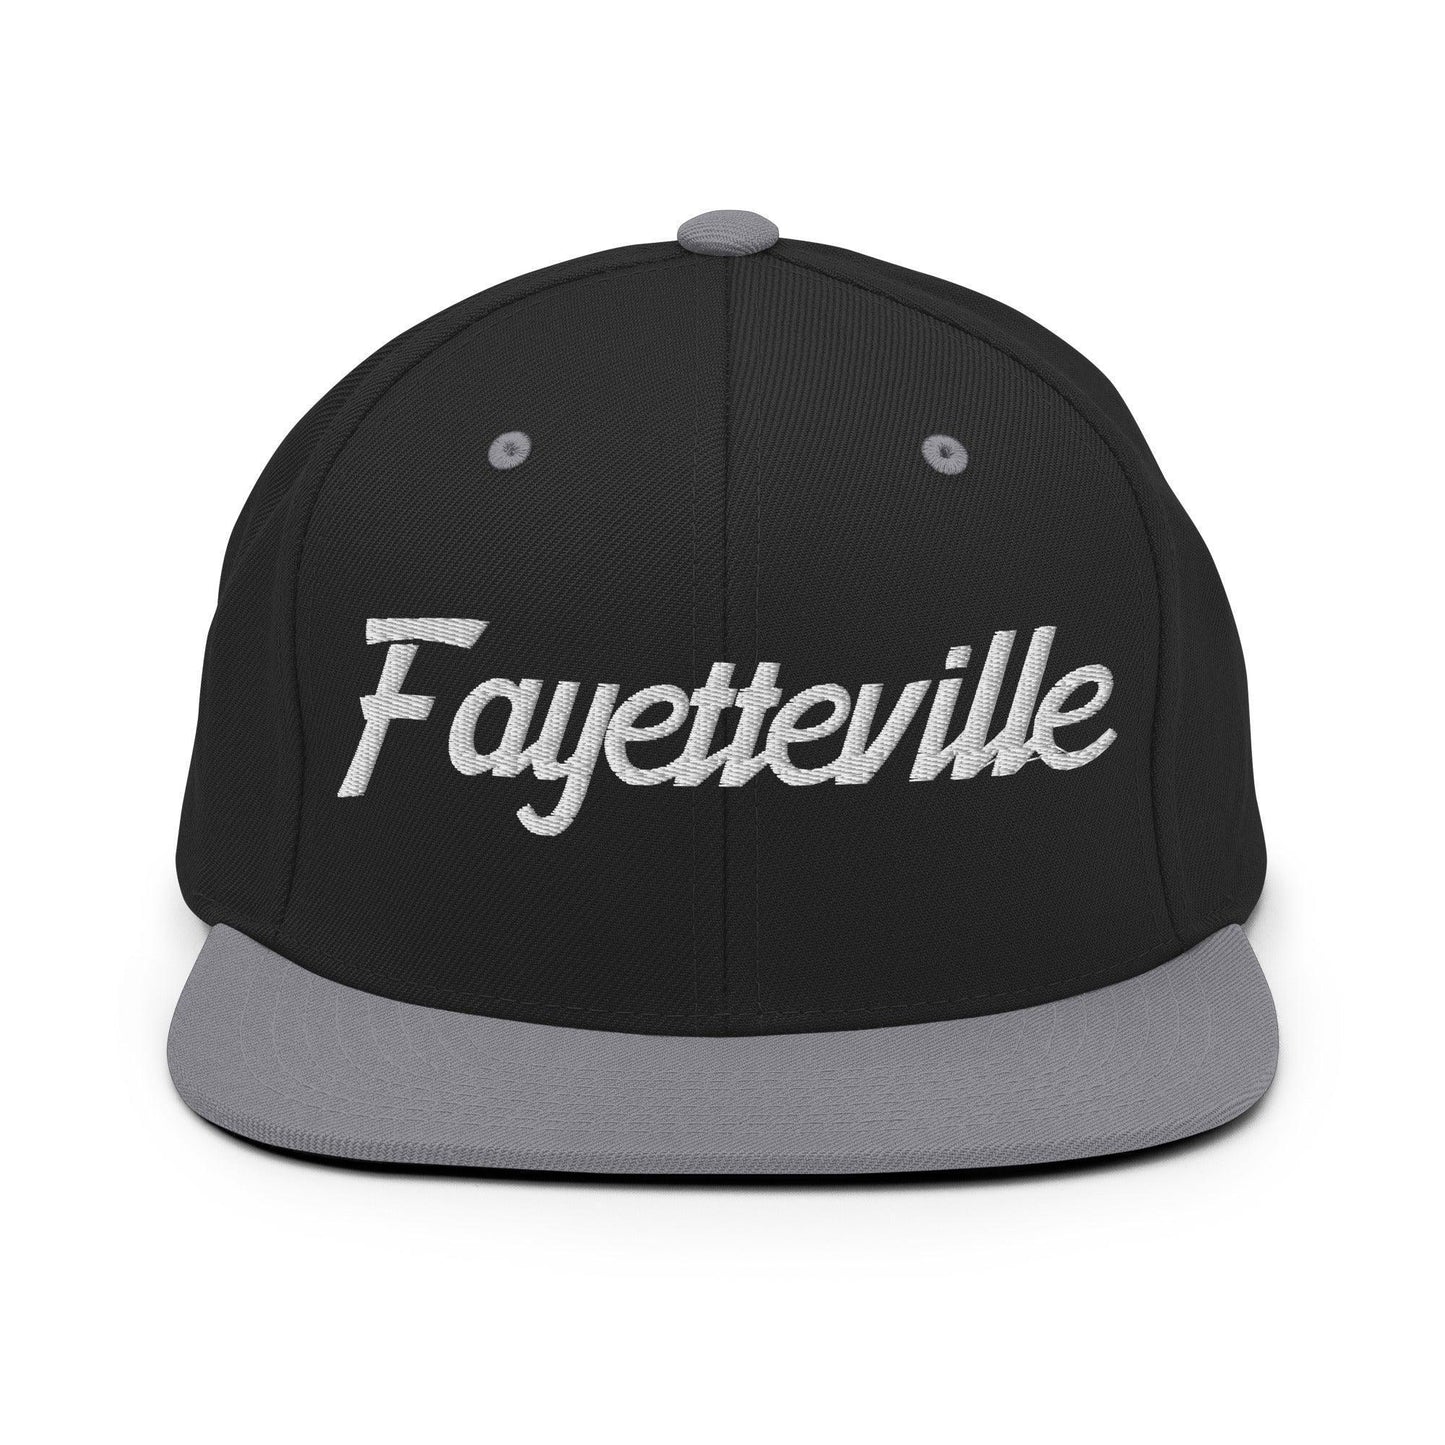 Fayetteville Script Snapback Hat Black Silver